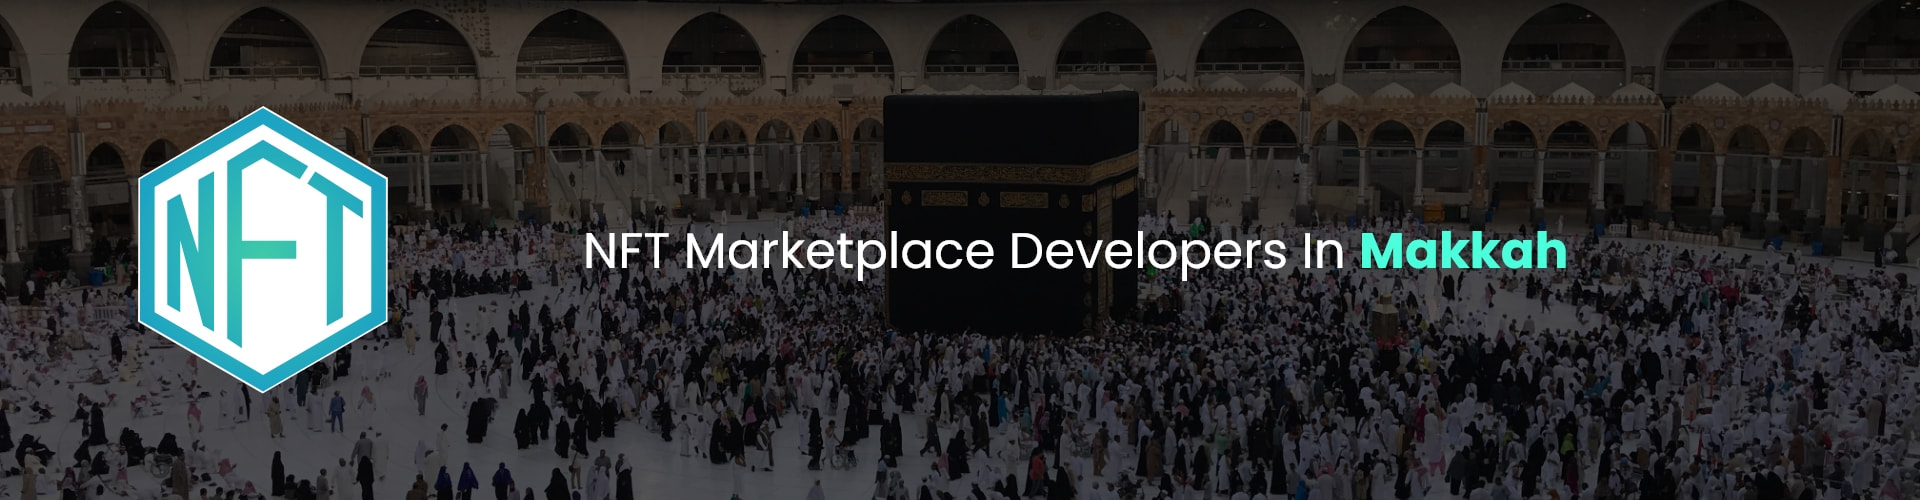 hire nft marketplace developers in Makkah